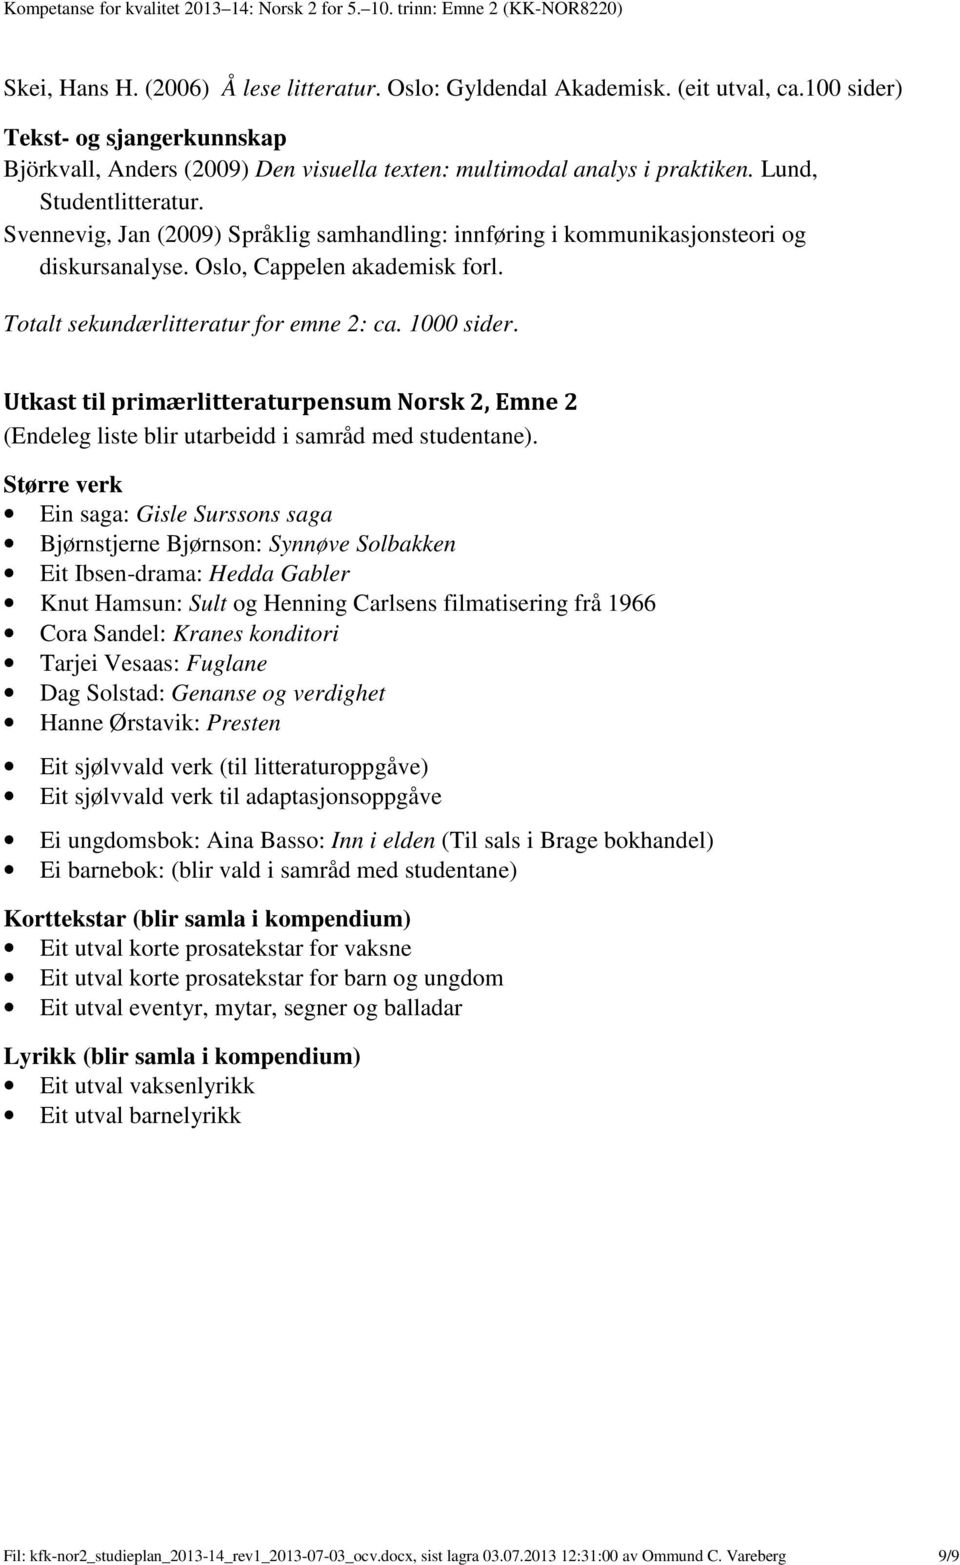 Svennevig, Jan (2009) Språklig samhandling: innføring i kommunikasjonsteori og diskursanalyse. Oslo, Cappelen akademisk forl. Totalt sekundærlitteratur for emne 2: ca. 1000 sider.